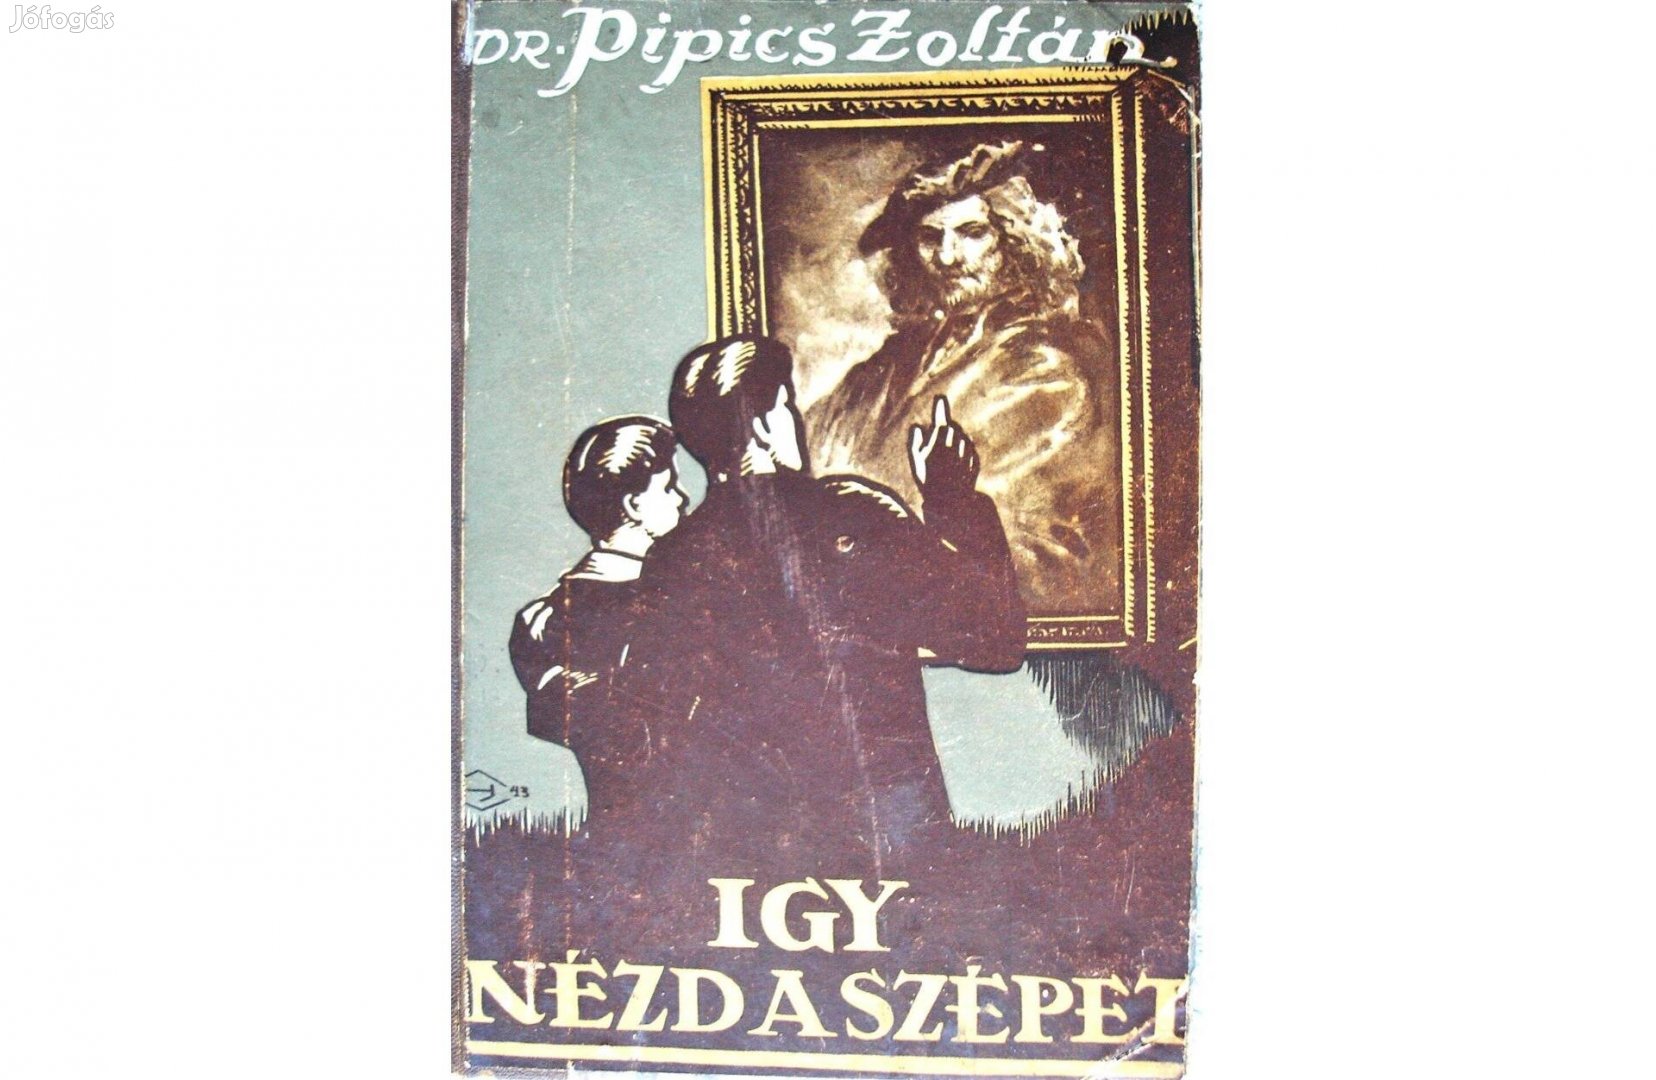 Dr. Pipics Zoltán könyve az ifjúságnak 1942-ből: "Így nézd a szépet!"